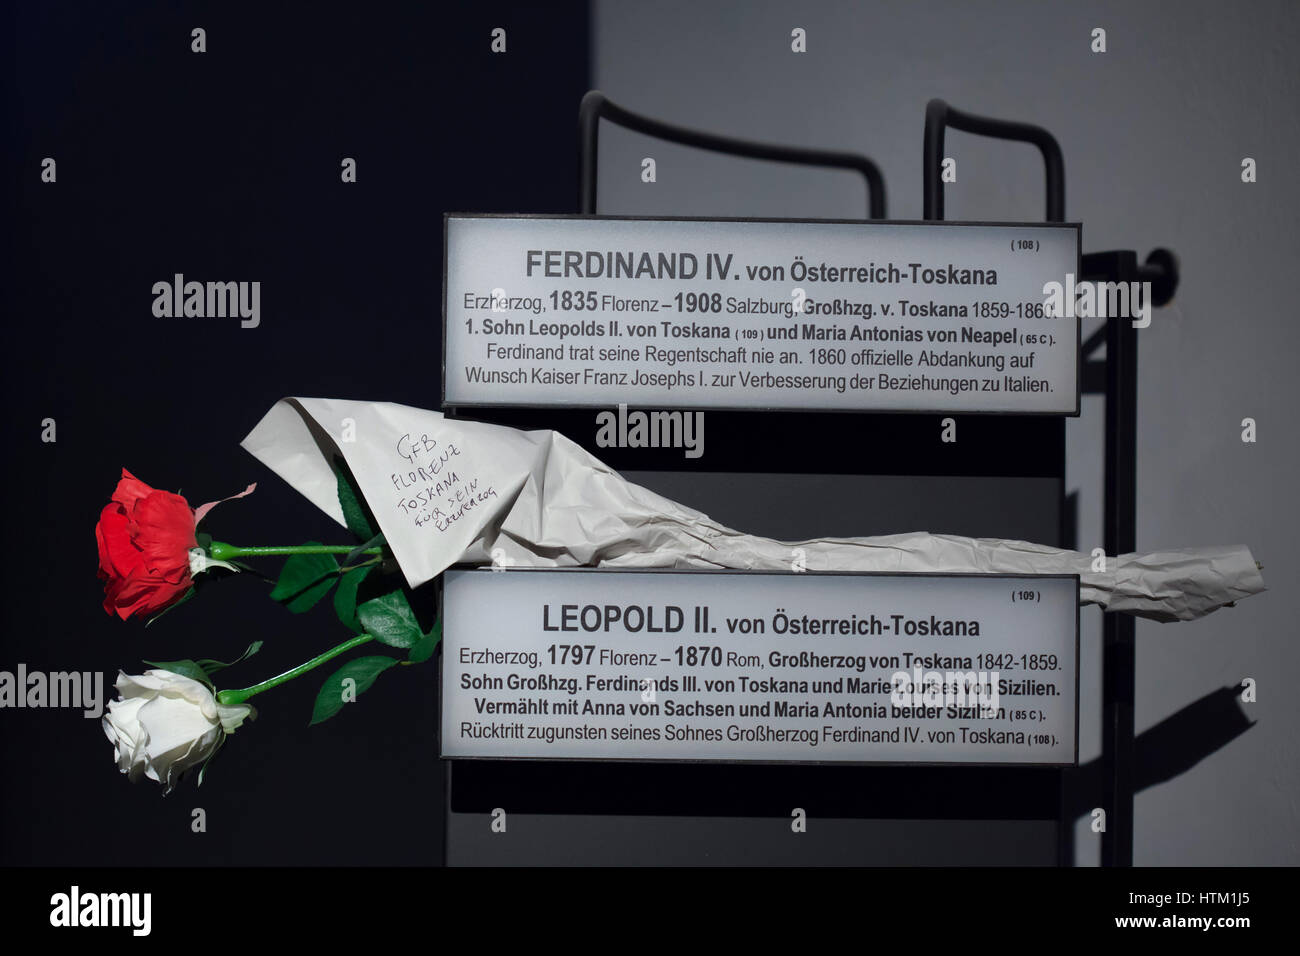 Kunststoff Rosen freut sich auf den Infotafeln neben die Sarkophage von Erzherzog Ferdinand IV., Großherzog von Toskana (1835-1908) und sein Vater Erzherzog Leopold II., Großherzog von Toskana (1797-1870) in der Kaisergruft (Kapuzinergruft) in Wien, Österreich. Stockfoto